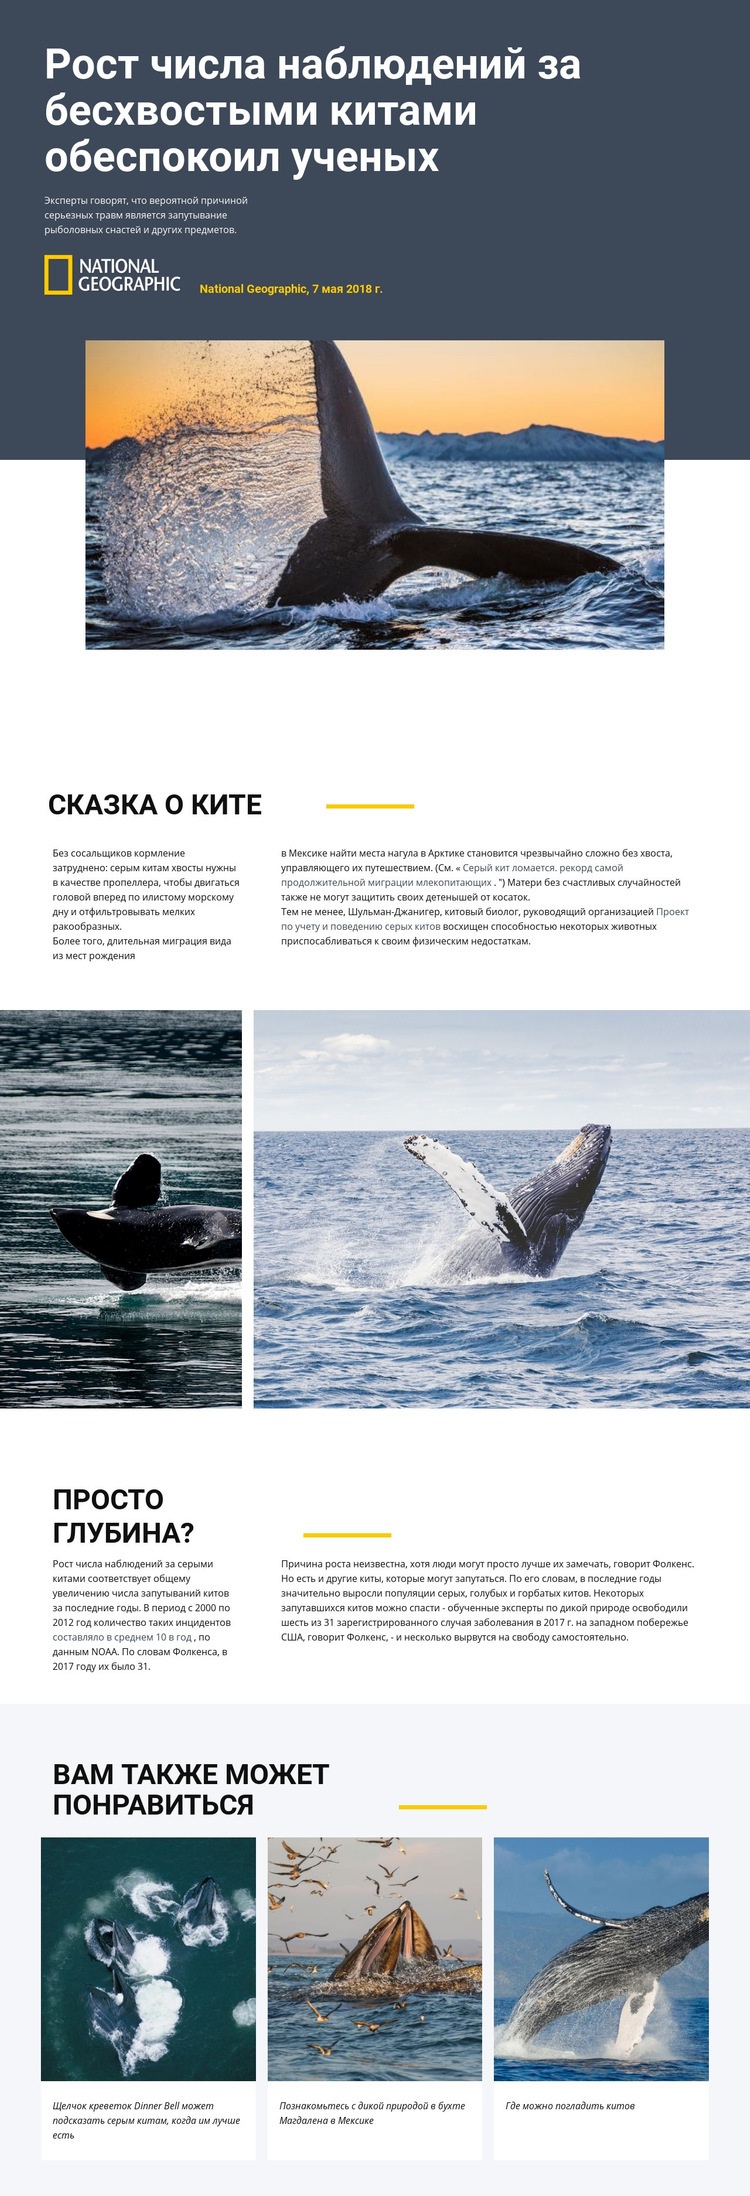 Центр наблюдения за китами HTML5 шаблон